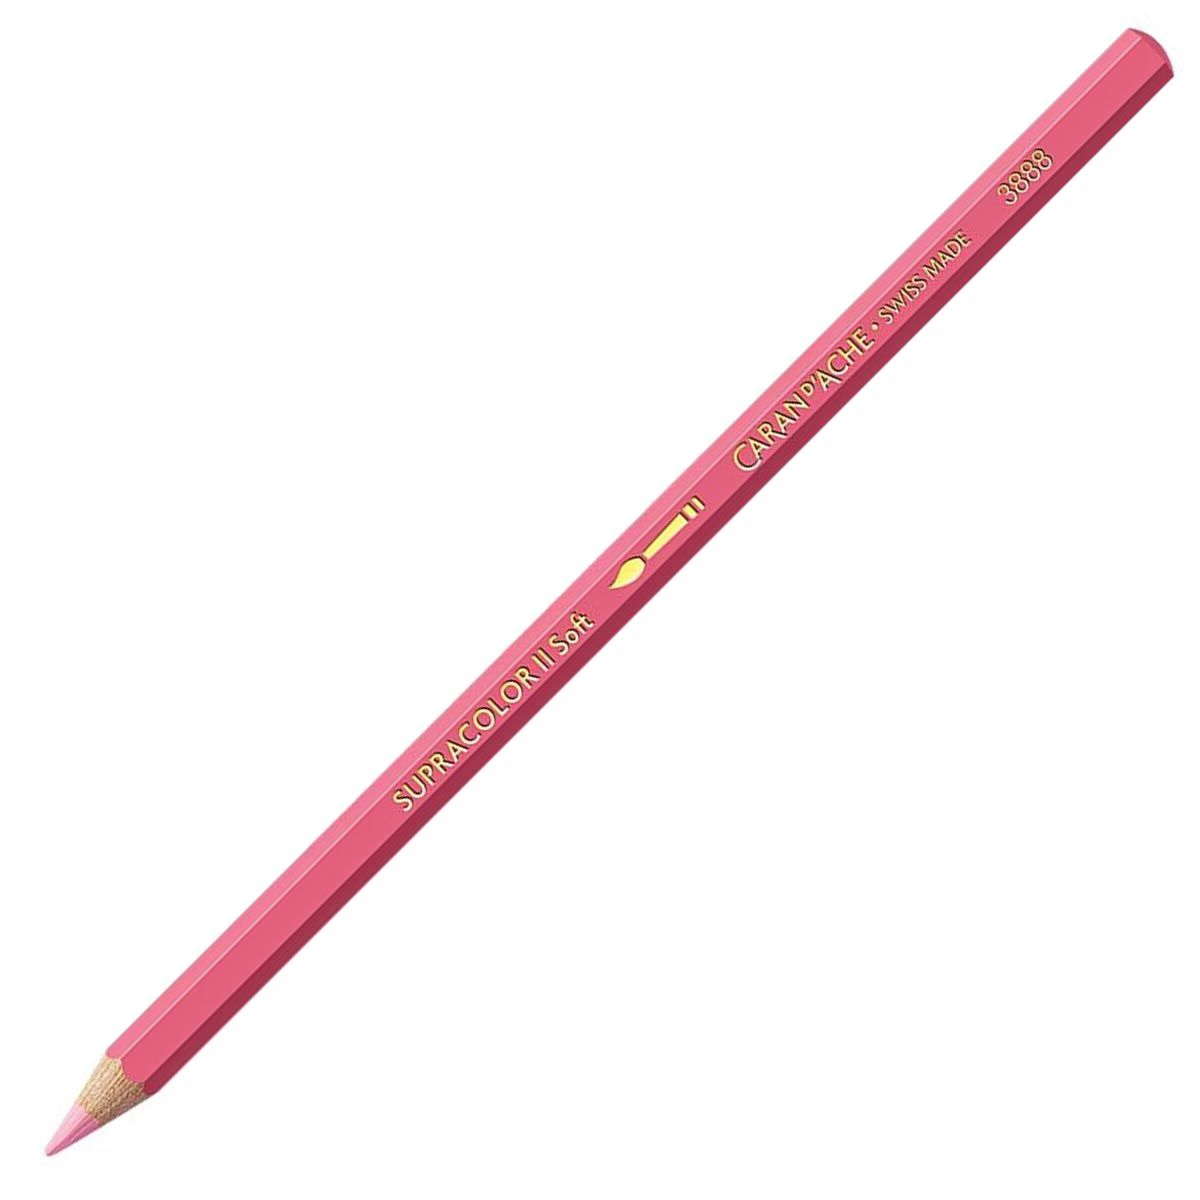 Caran d'Ache Supracolor ll Soft Aquarelle Pencil - Pink 081